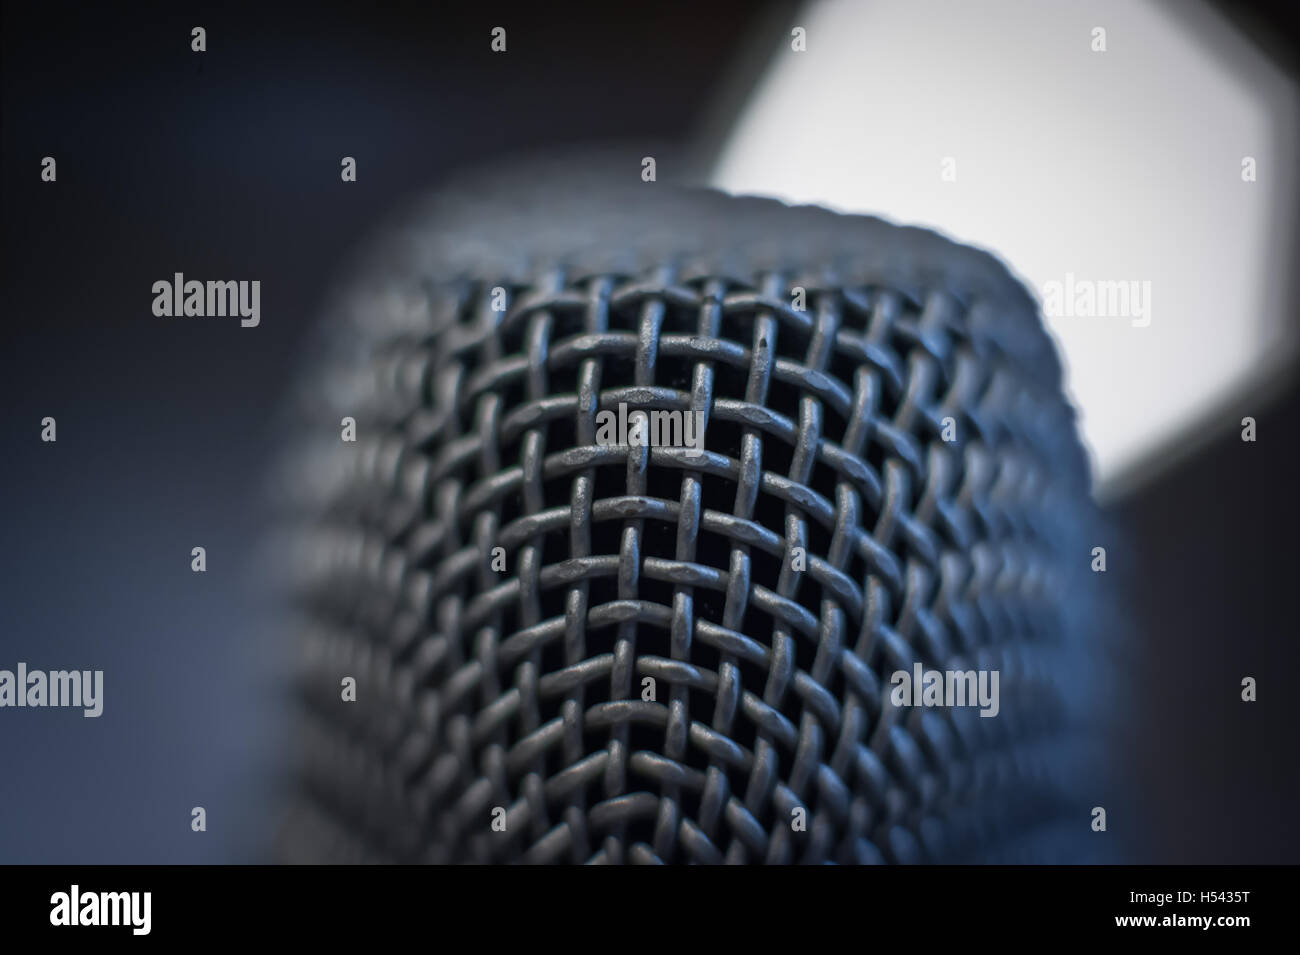 Nero moderno studio microfono testa macro close up con fuori fuoco freddo luce blu in alto a destra sullo sfondo Foto Stock